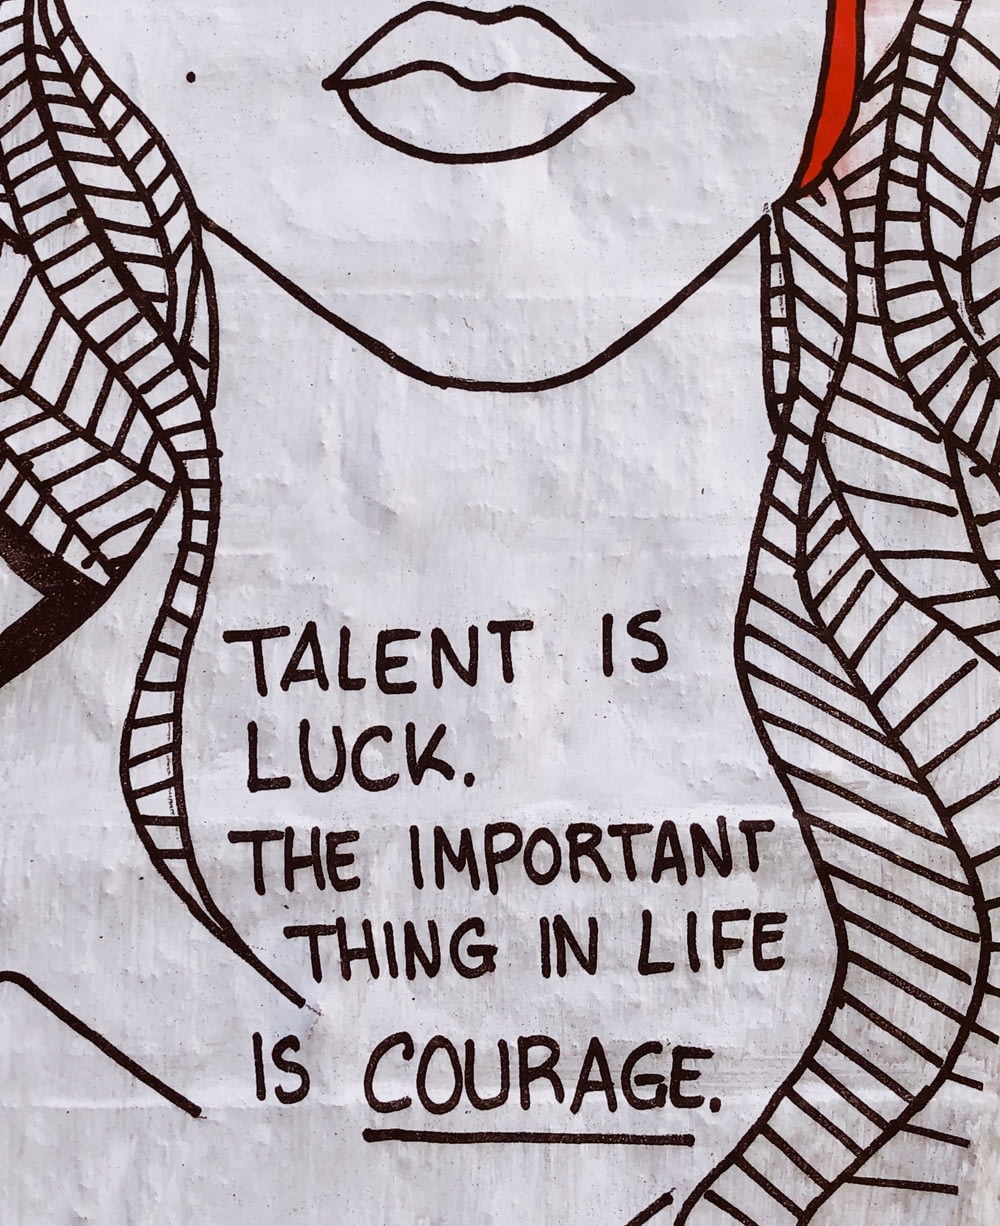 Il talento è fortuna, l'importante nella vita è il coraggio